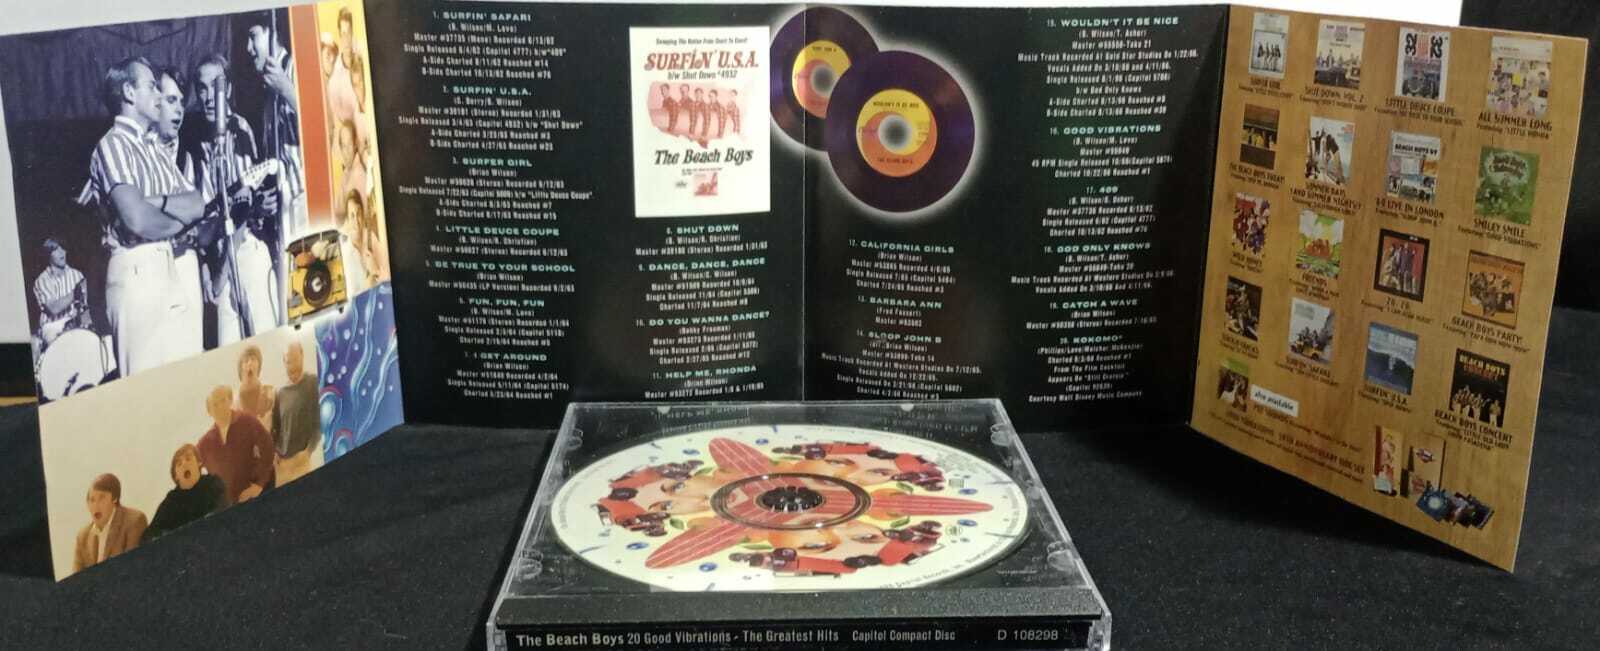 CD - Beach Boys The - 20 good vibrations the greatest hits (USA)